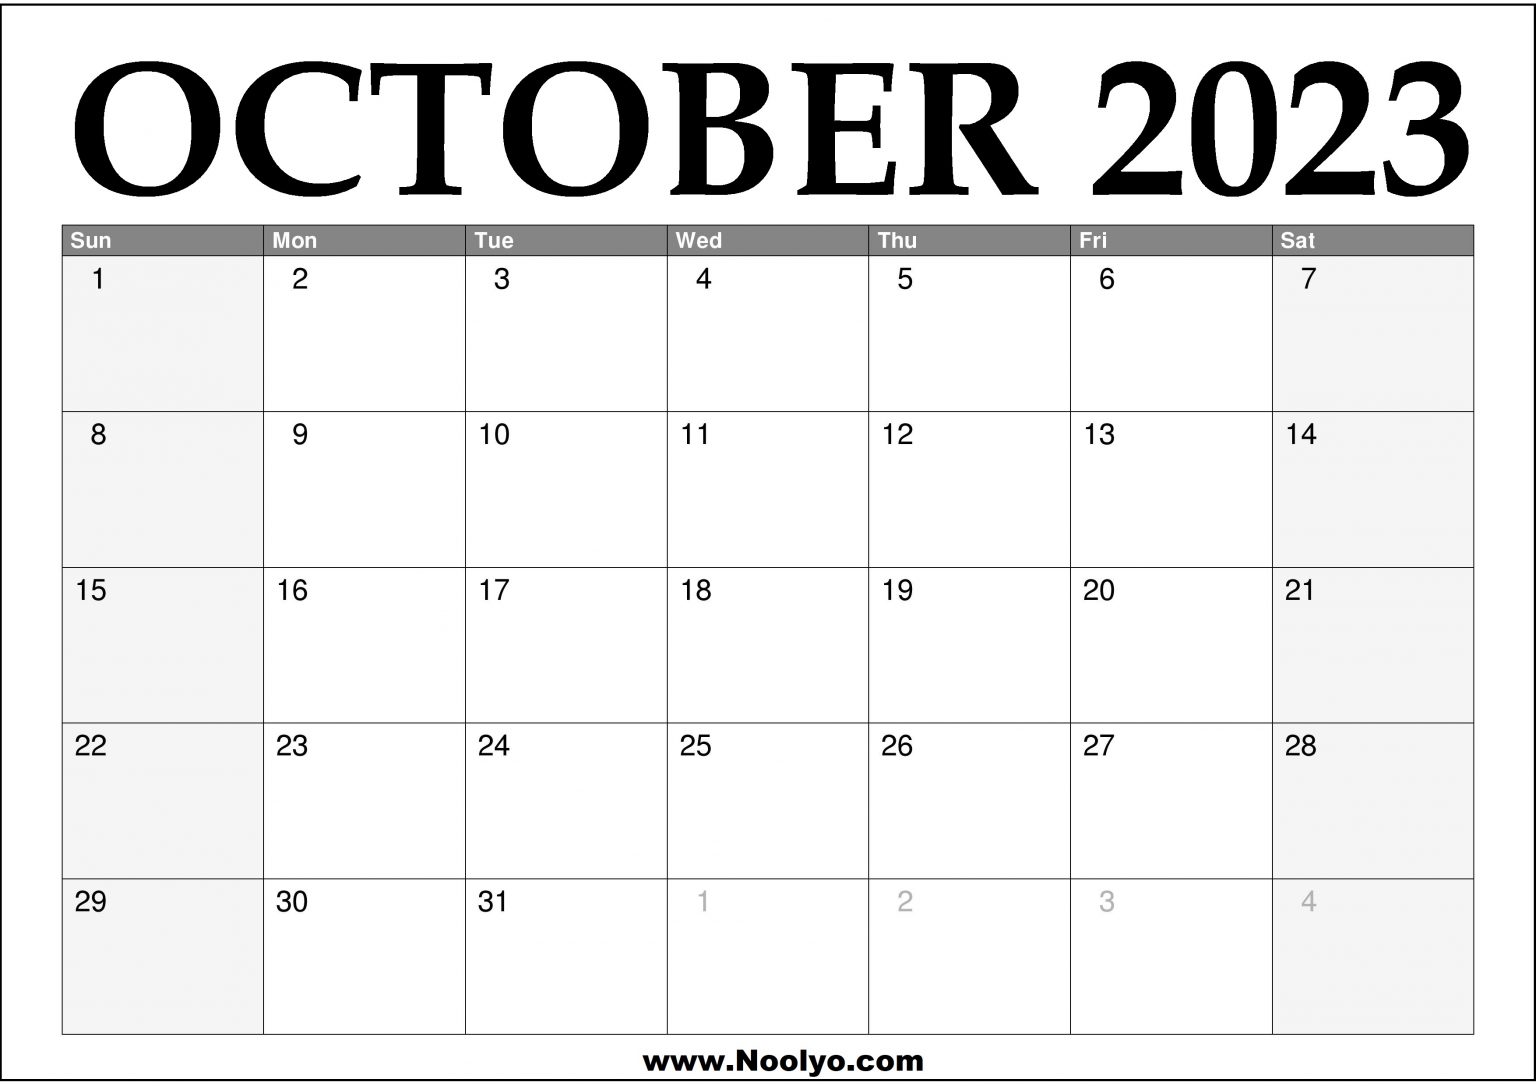 2023 Calendar Archives - Noolyo.com Calendars Printable